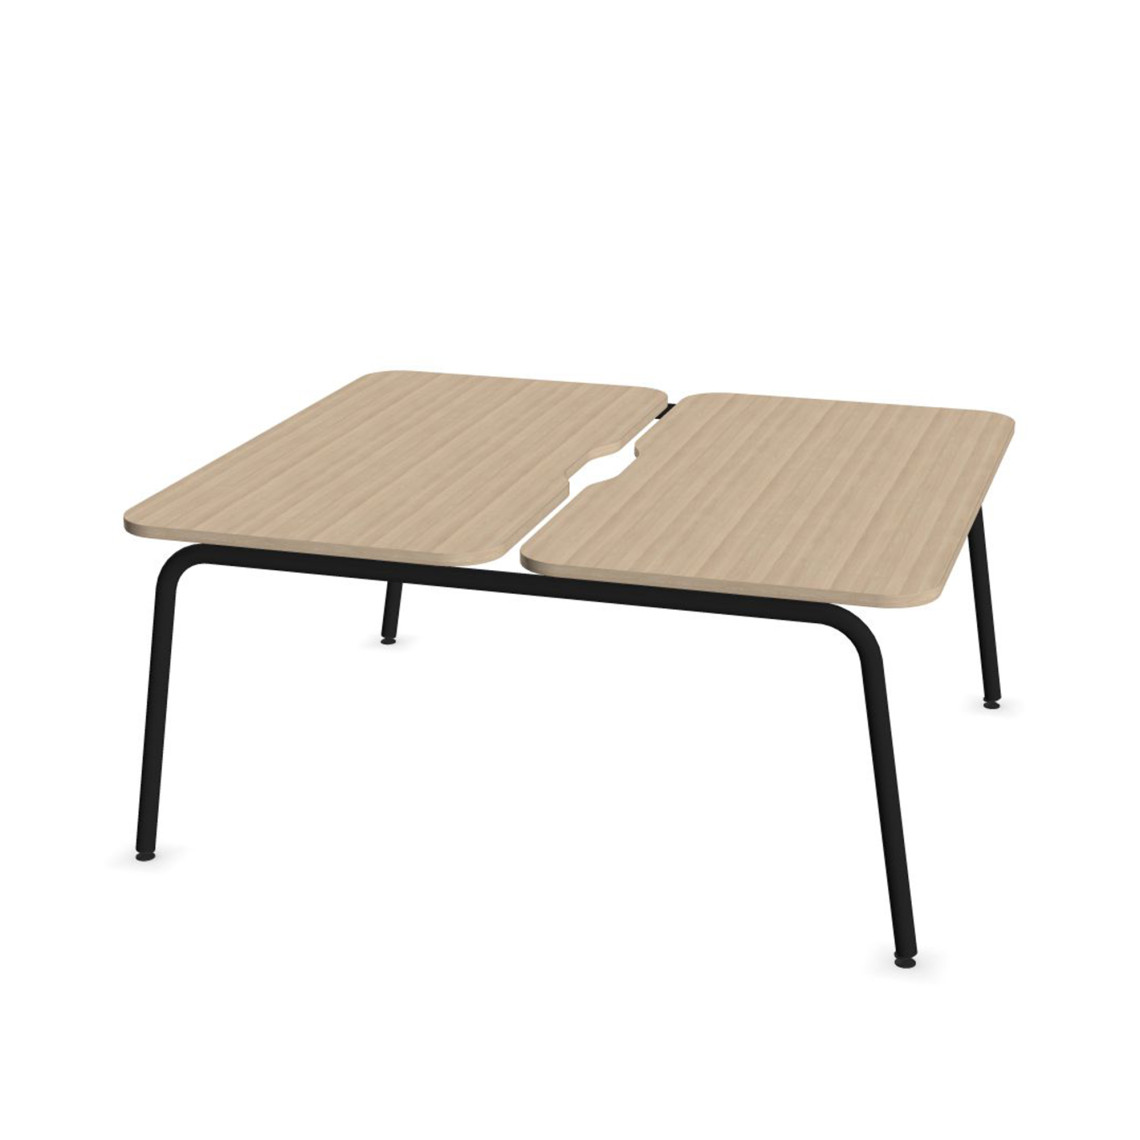 Dobbelt skrivebord Round, Design Black / Sand Ash, Bredde 120 cm